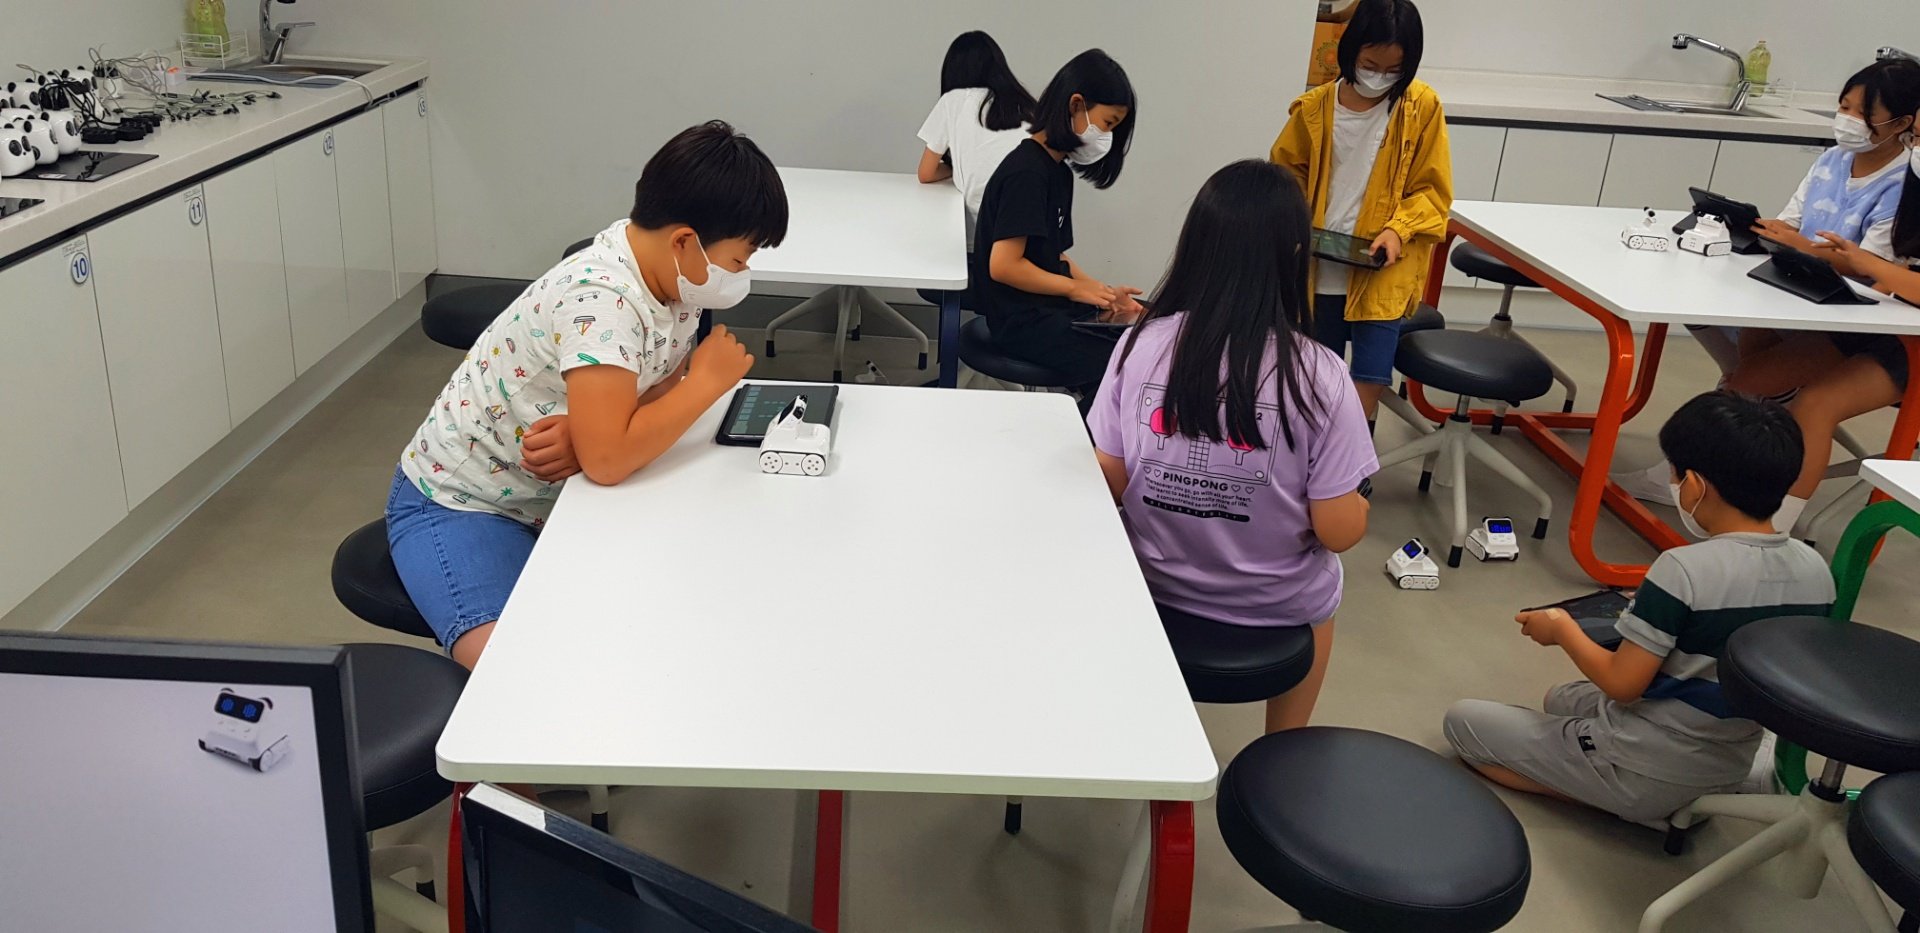 렌쥴리에듀테인먼트 서울 등현초등학교 인공지능미래교실/신나는 AI교실 